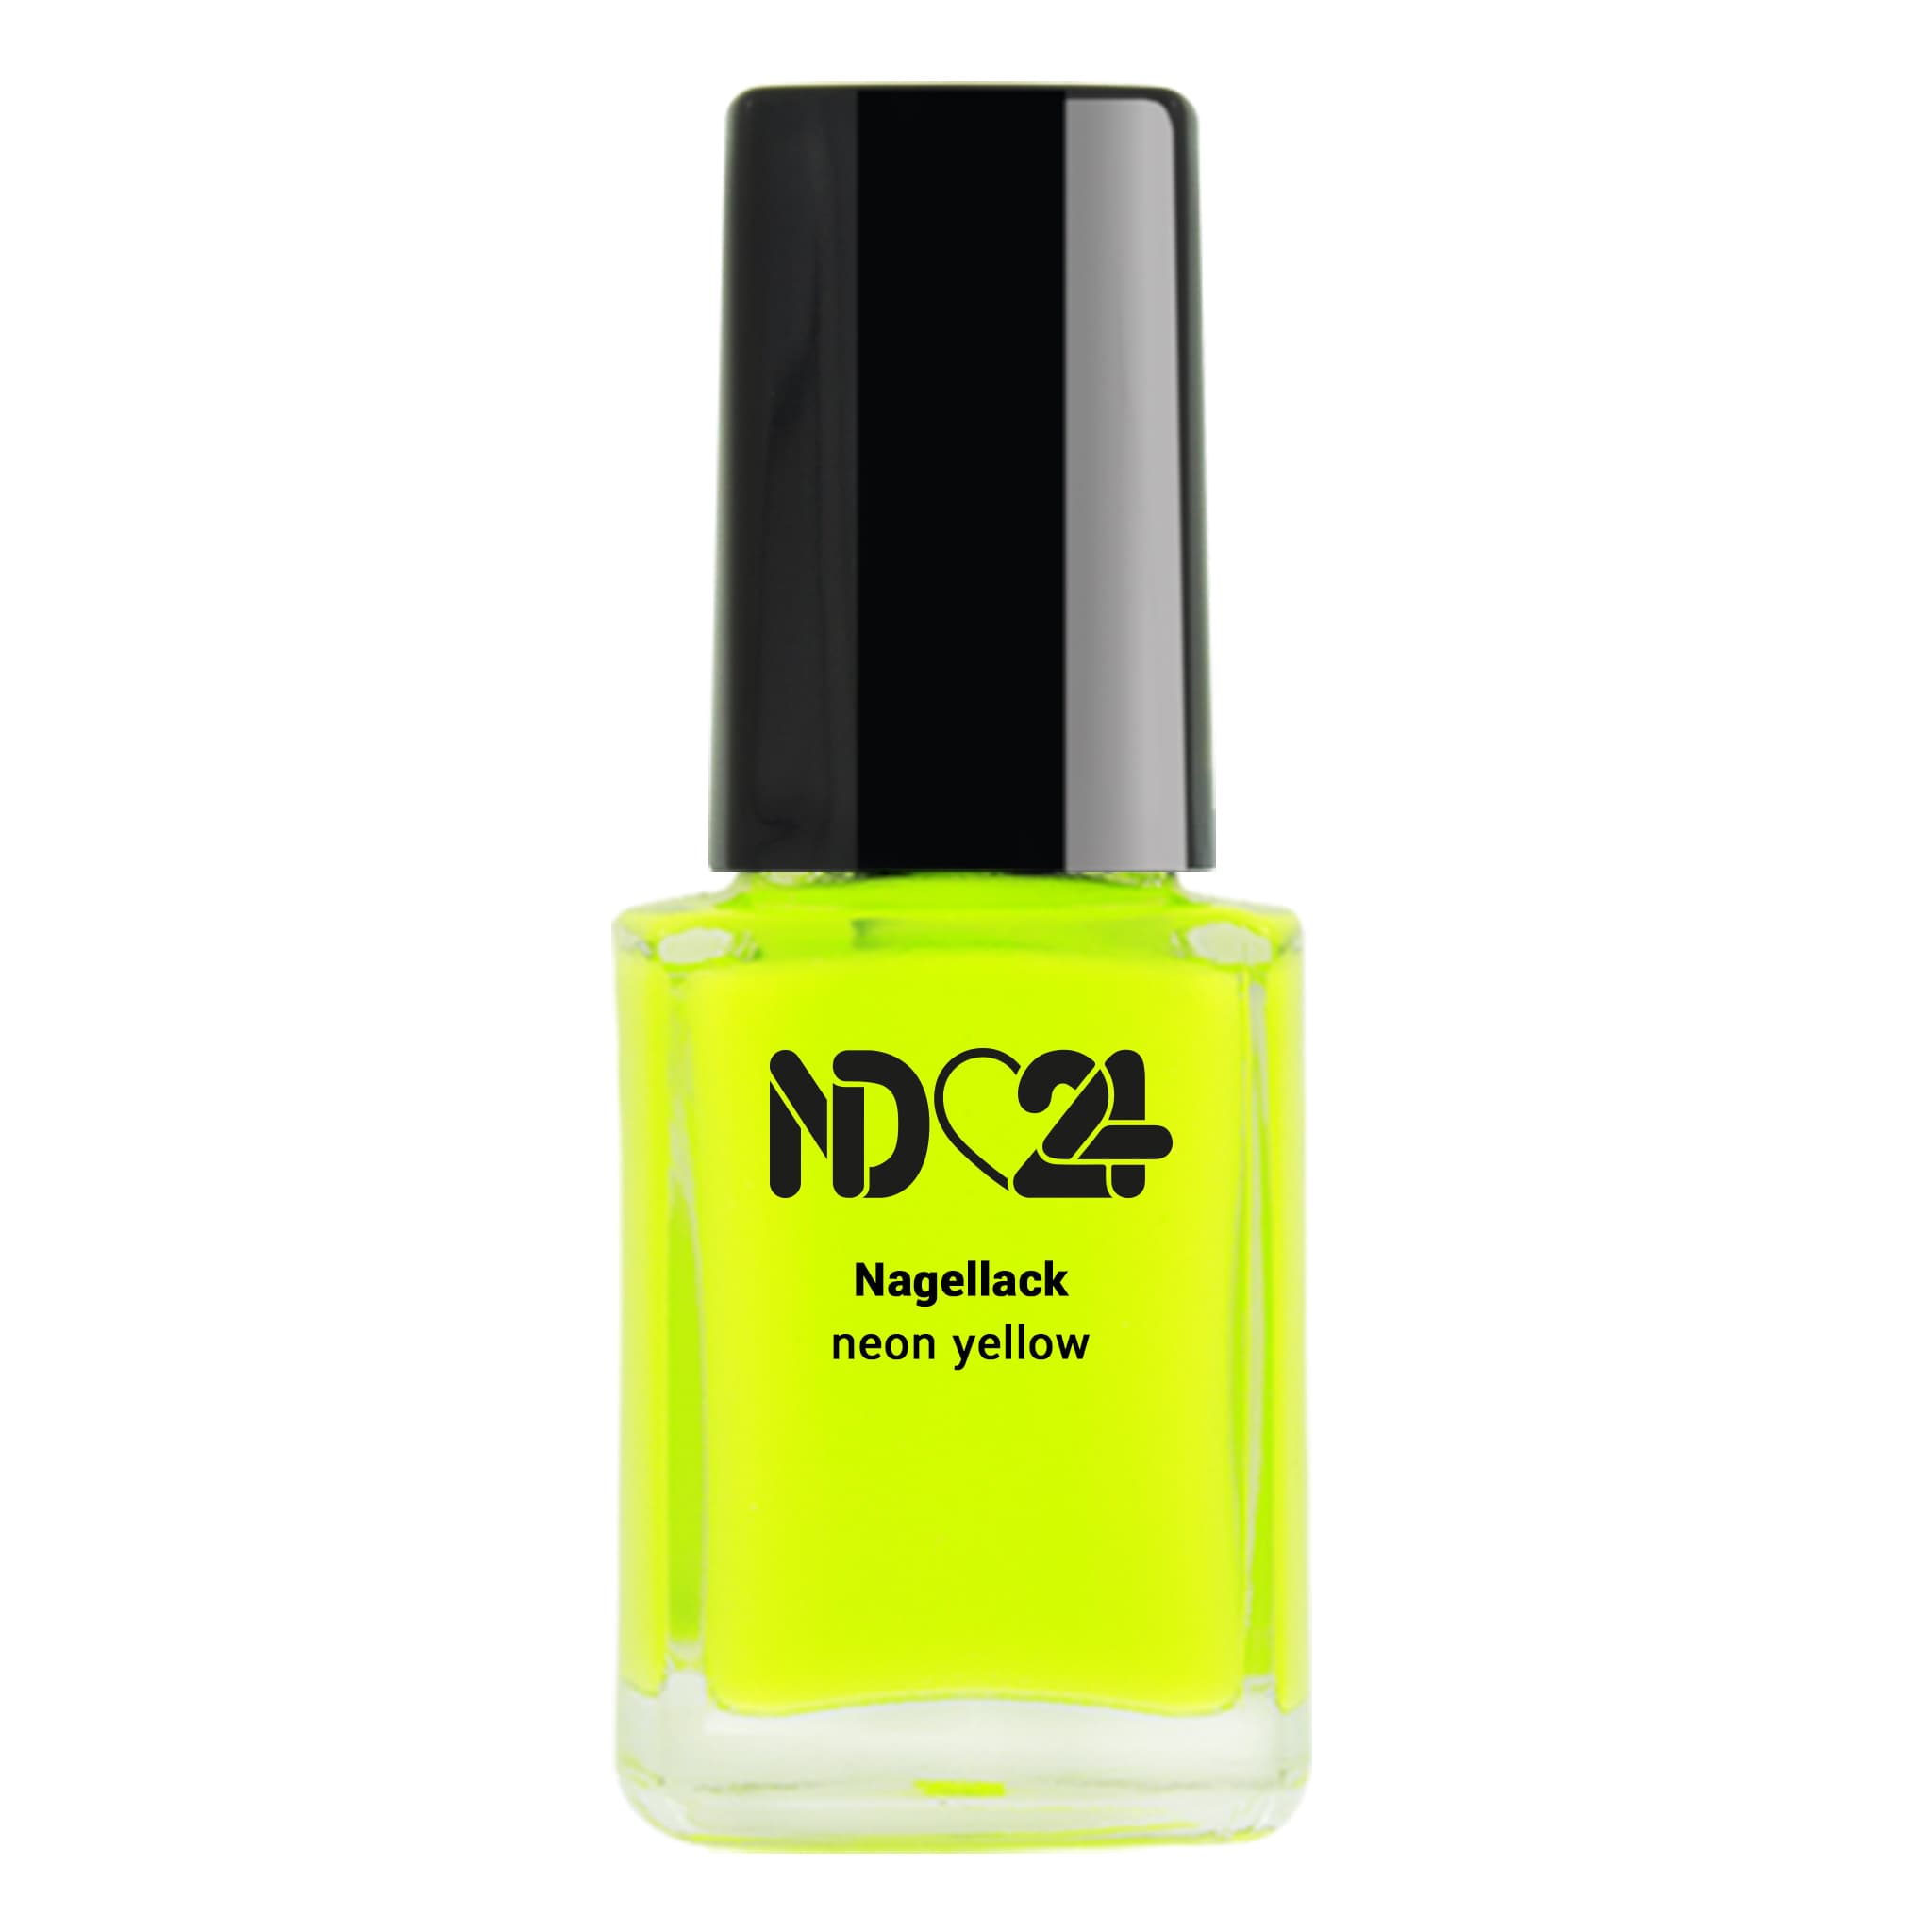 Nagellack neon yellow günstig bestellen bei 😍 ND24 NailDesign